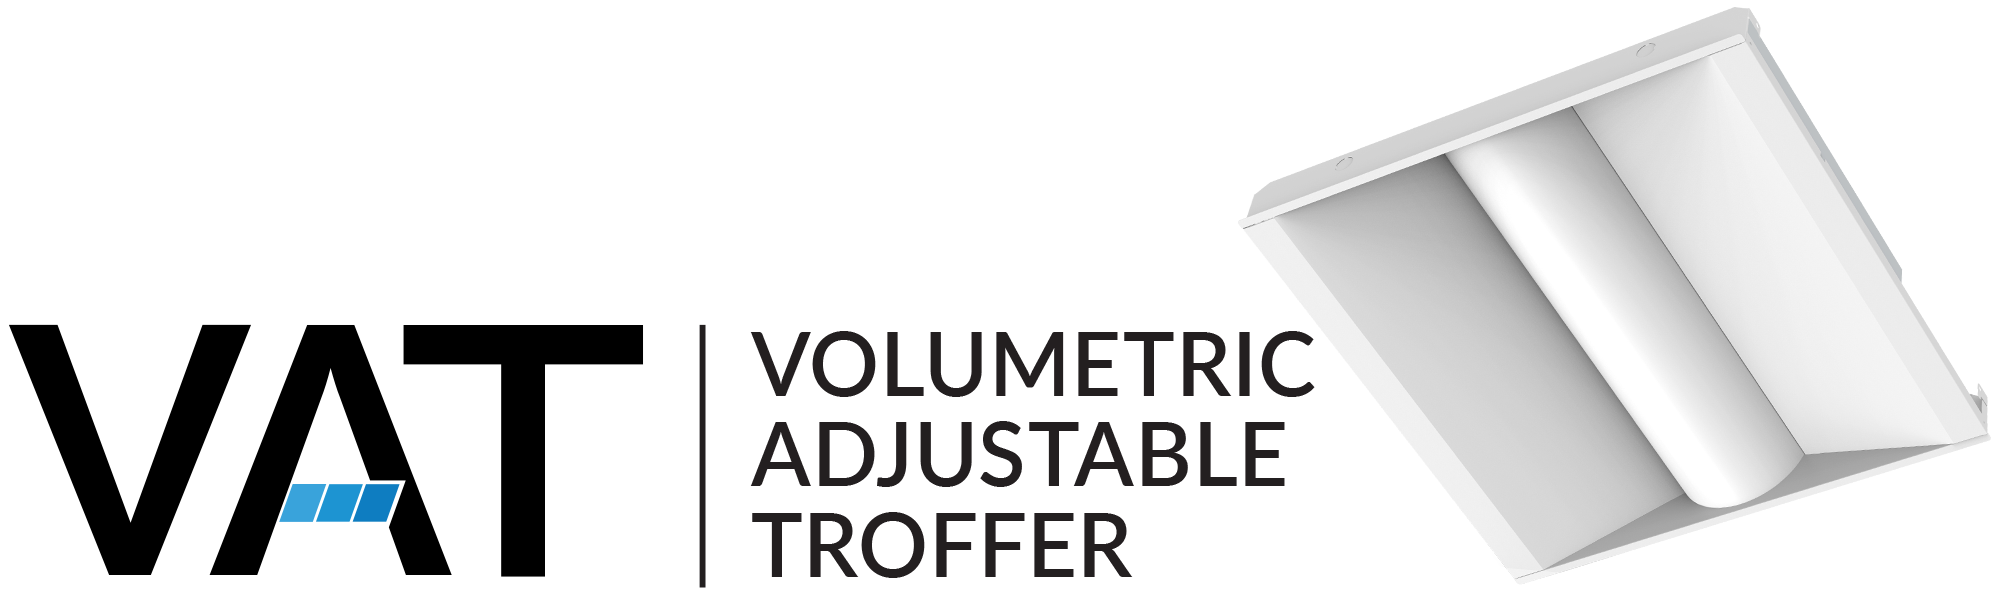 VAT-logo-name-banner